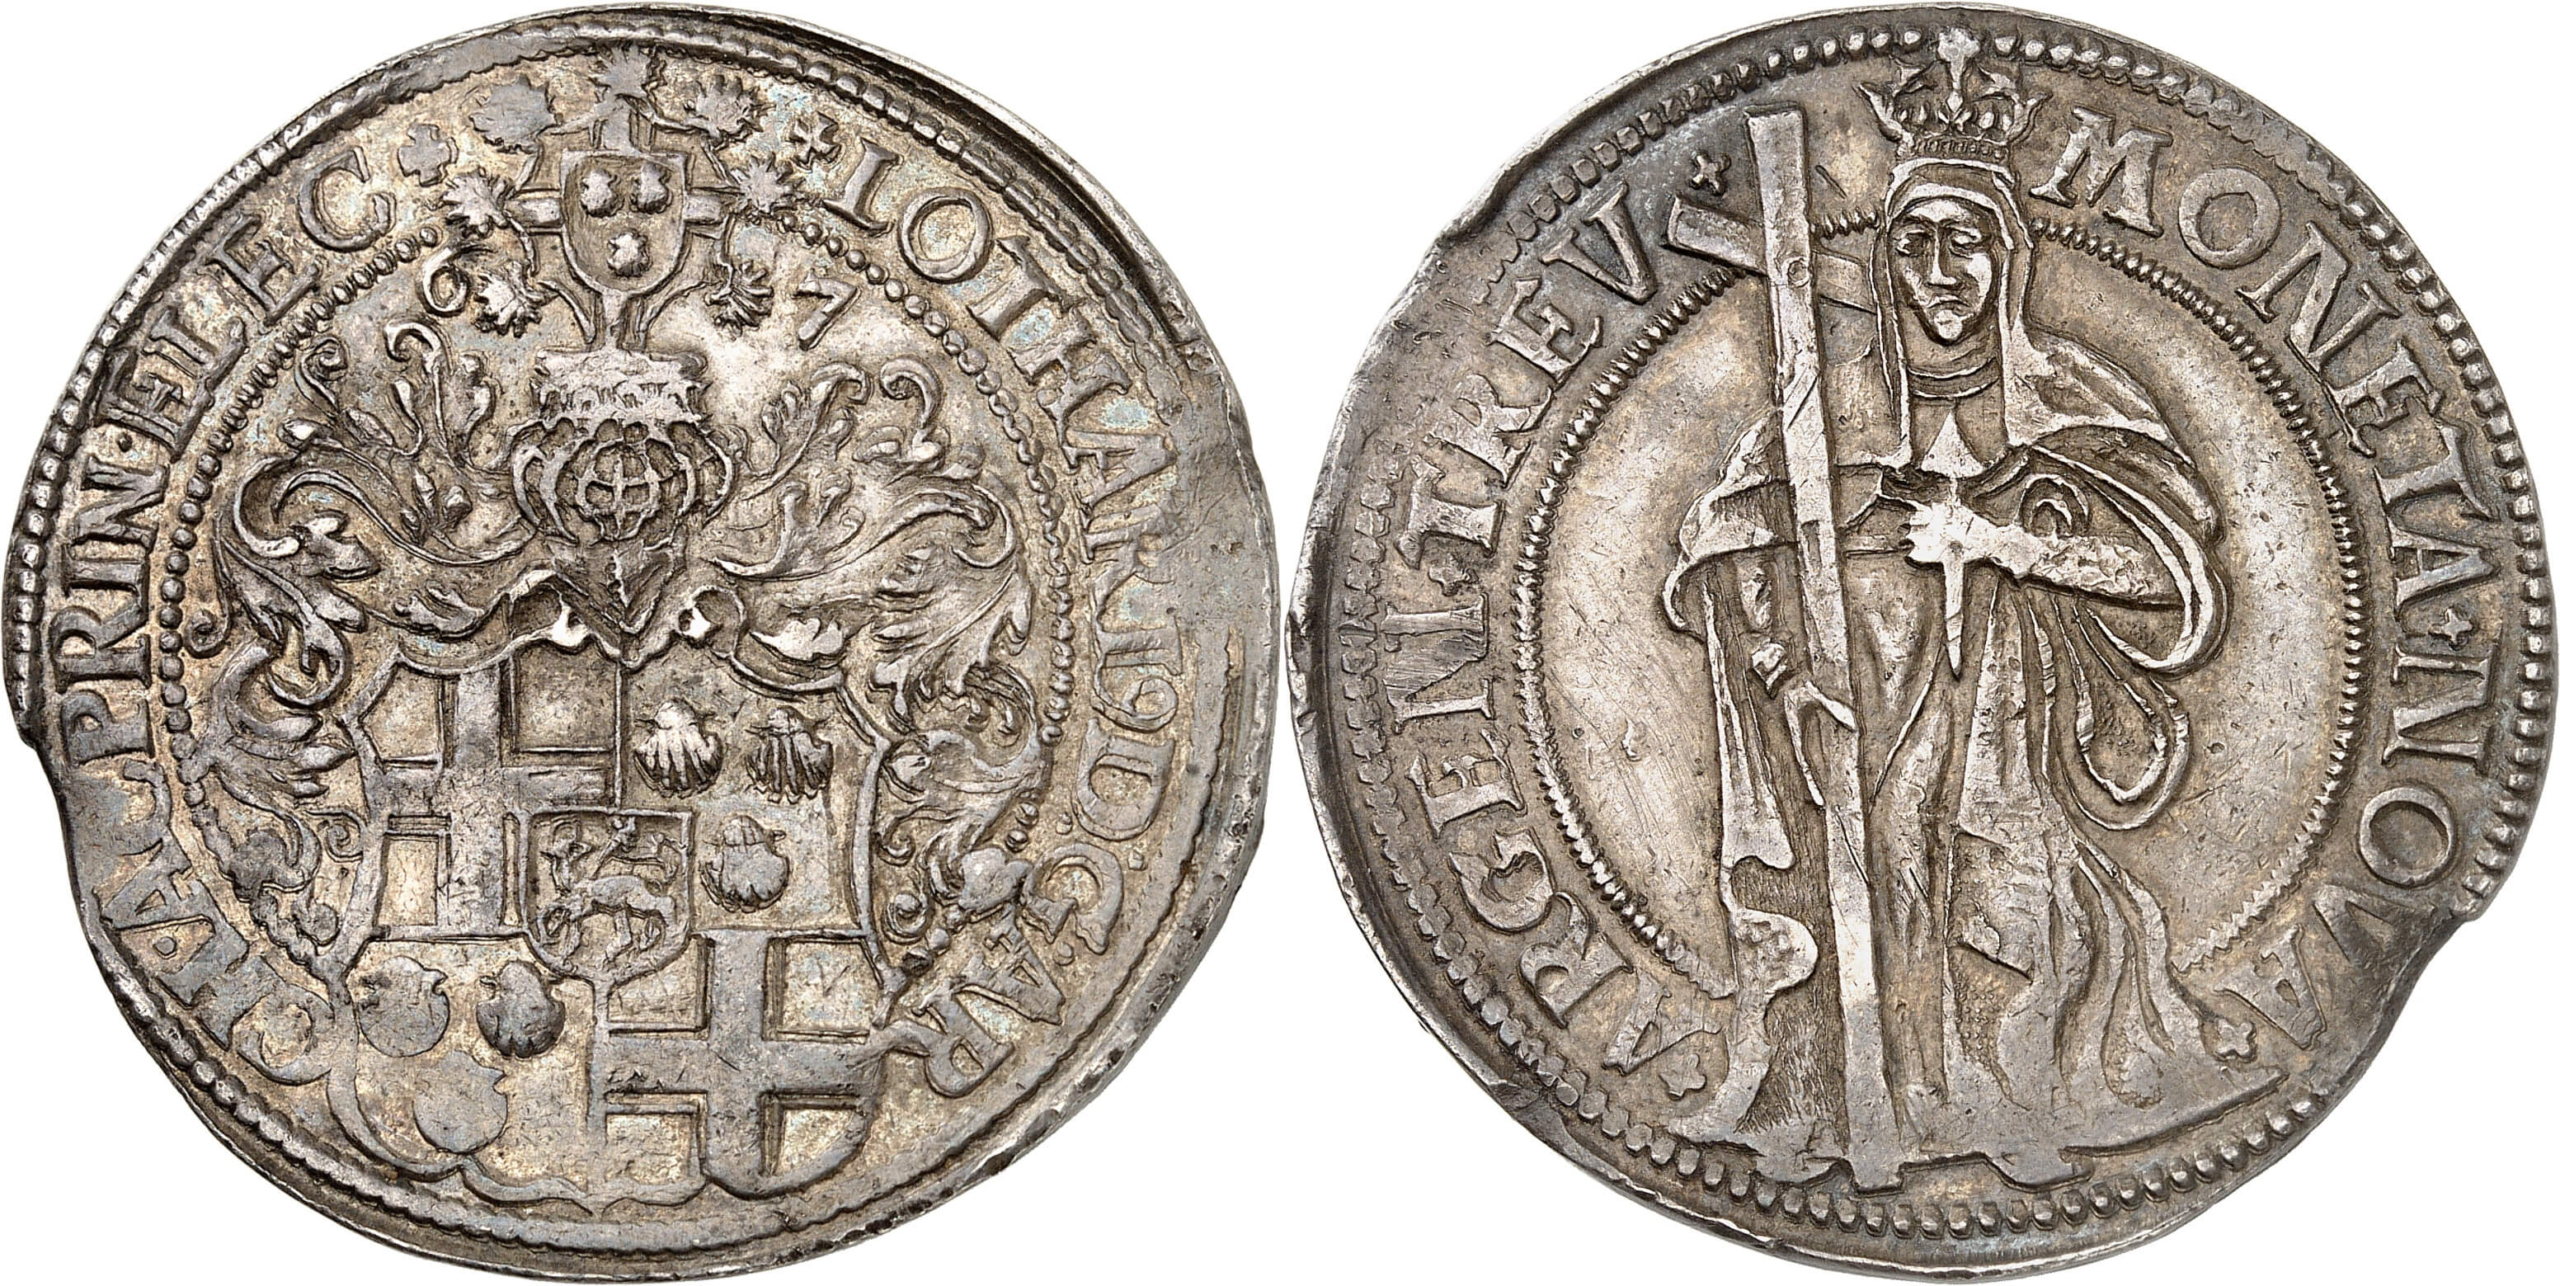 Nr. 5270. Trier. Lothar von Metternich, 1599-1623. Reichstaler 1607, Trier. Äußerst selten. Taxe: 15.000 Euro. Zuschlag: 22.000 Euro.